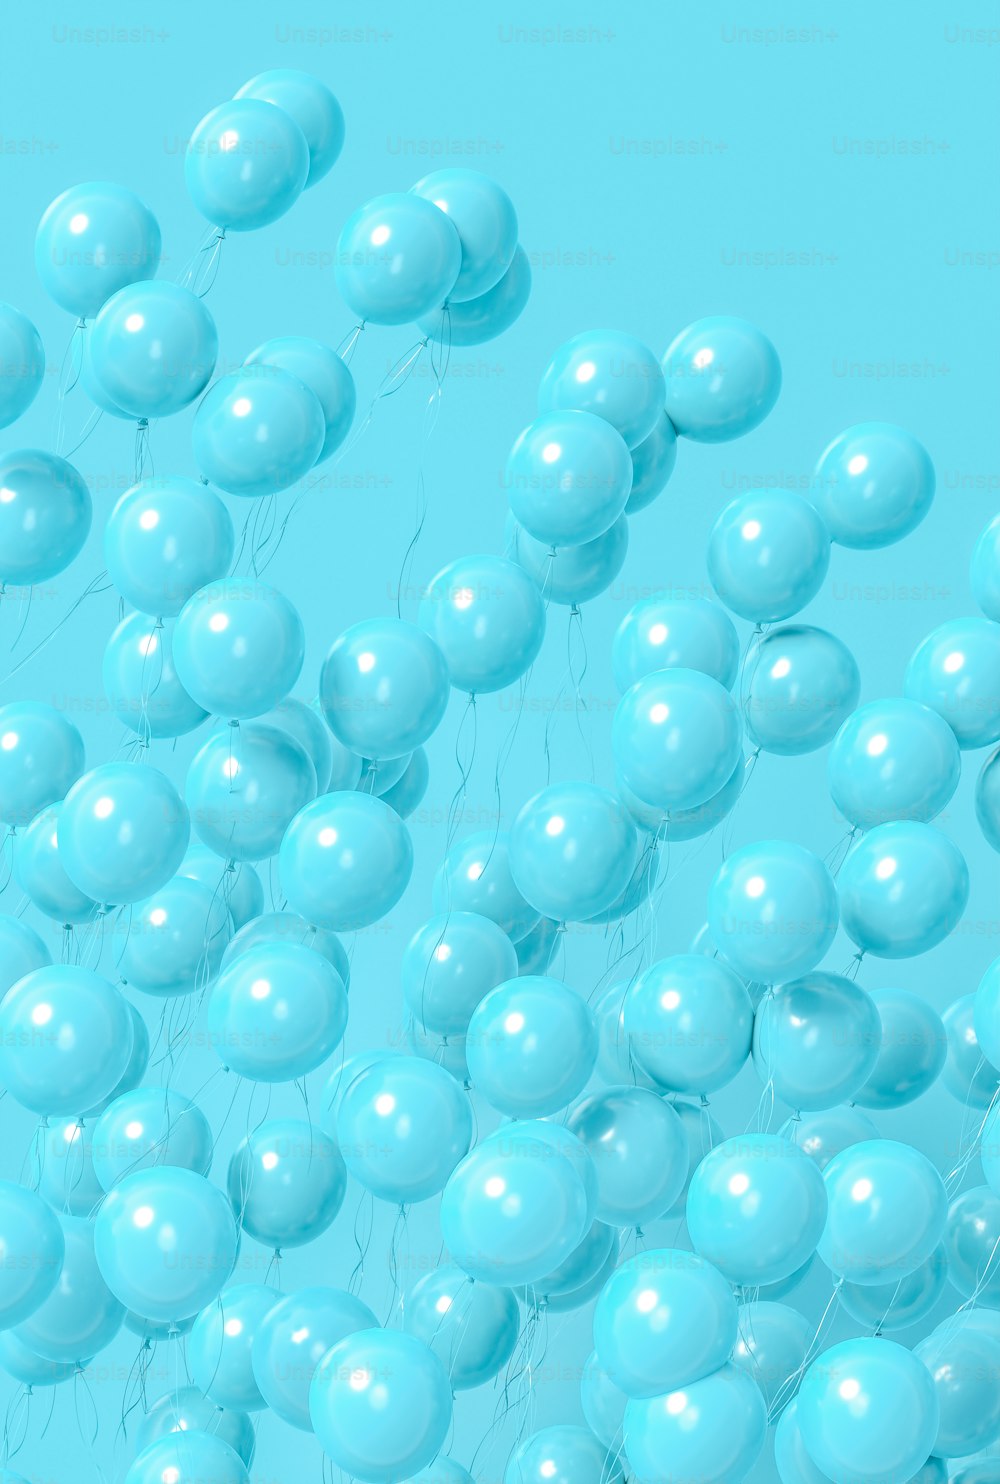 Un mucchio di palloncini blu che fluttuano nell'aria